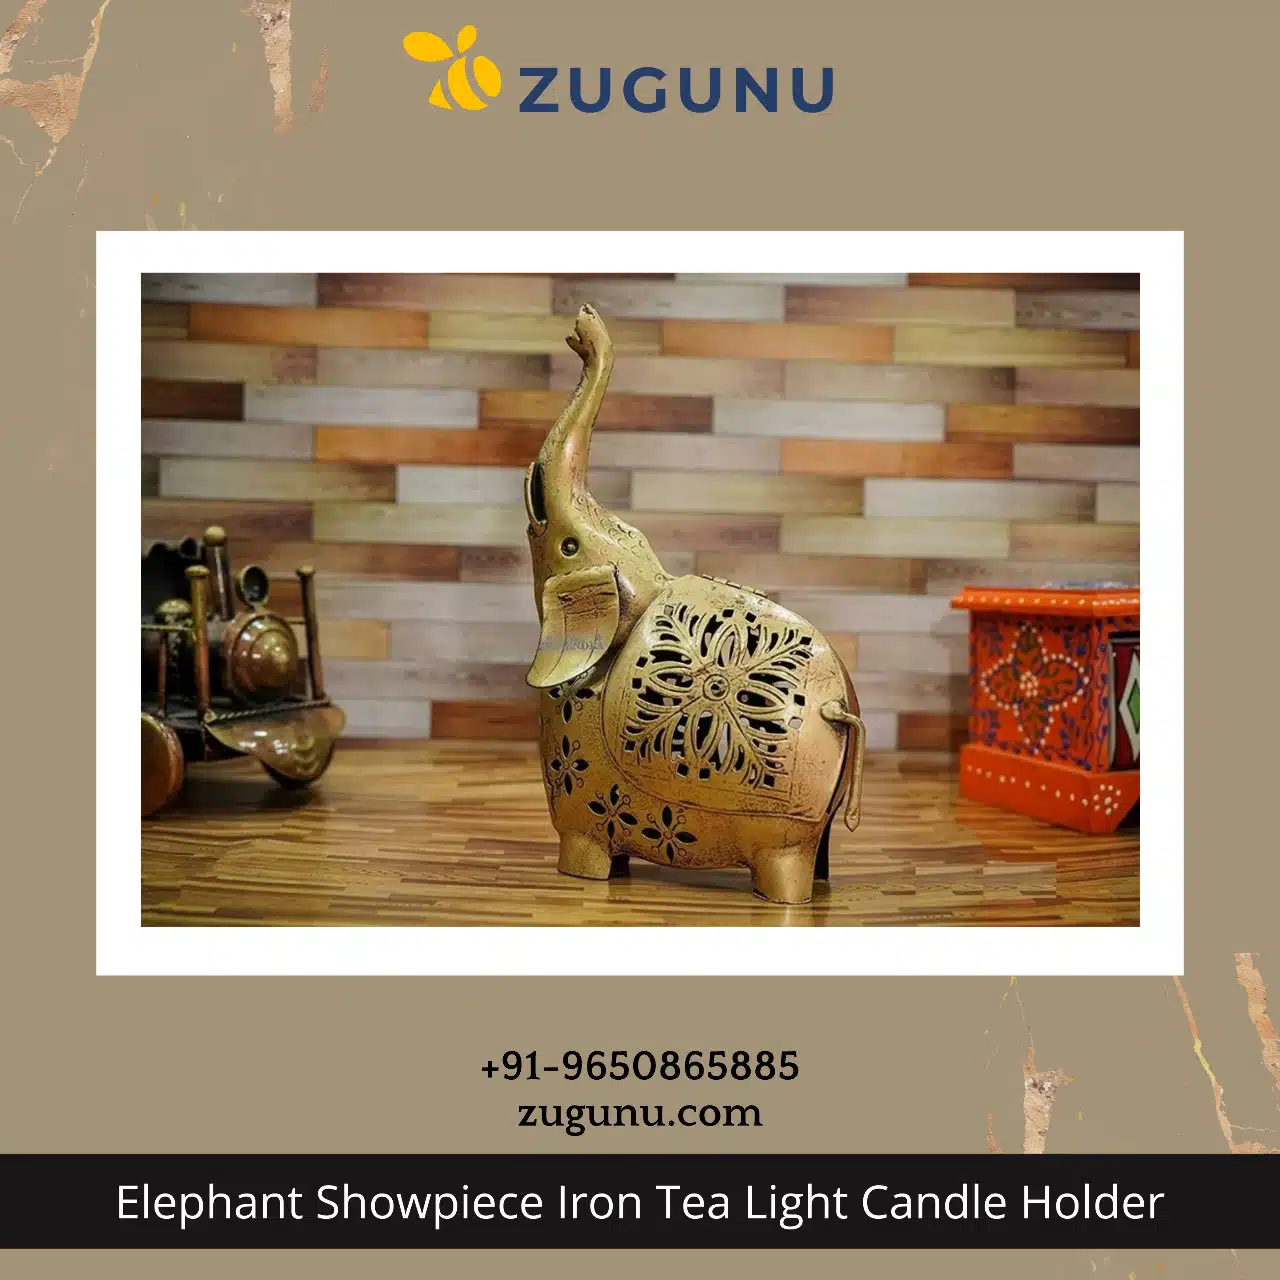 Explore The Best Tea Light Candle Holder In India Zugunu